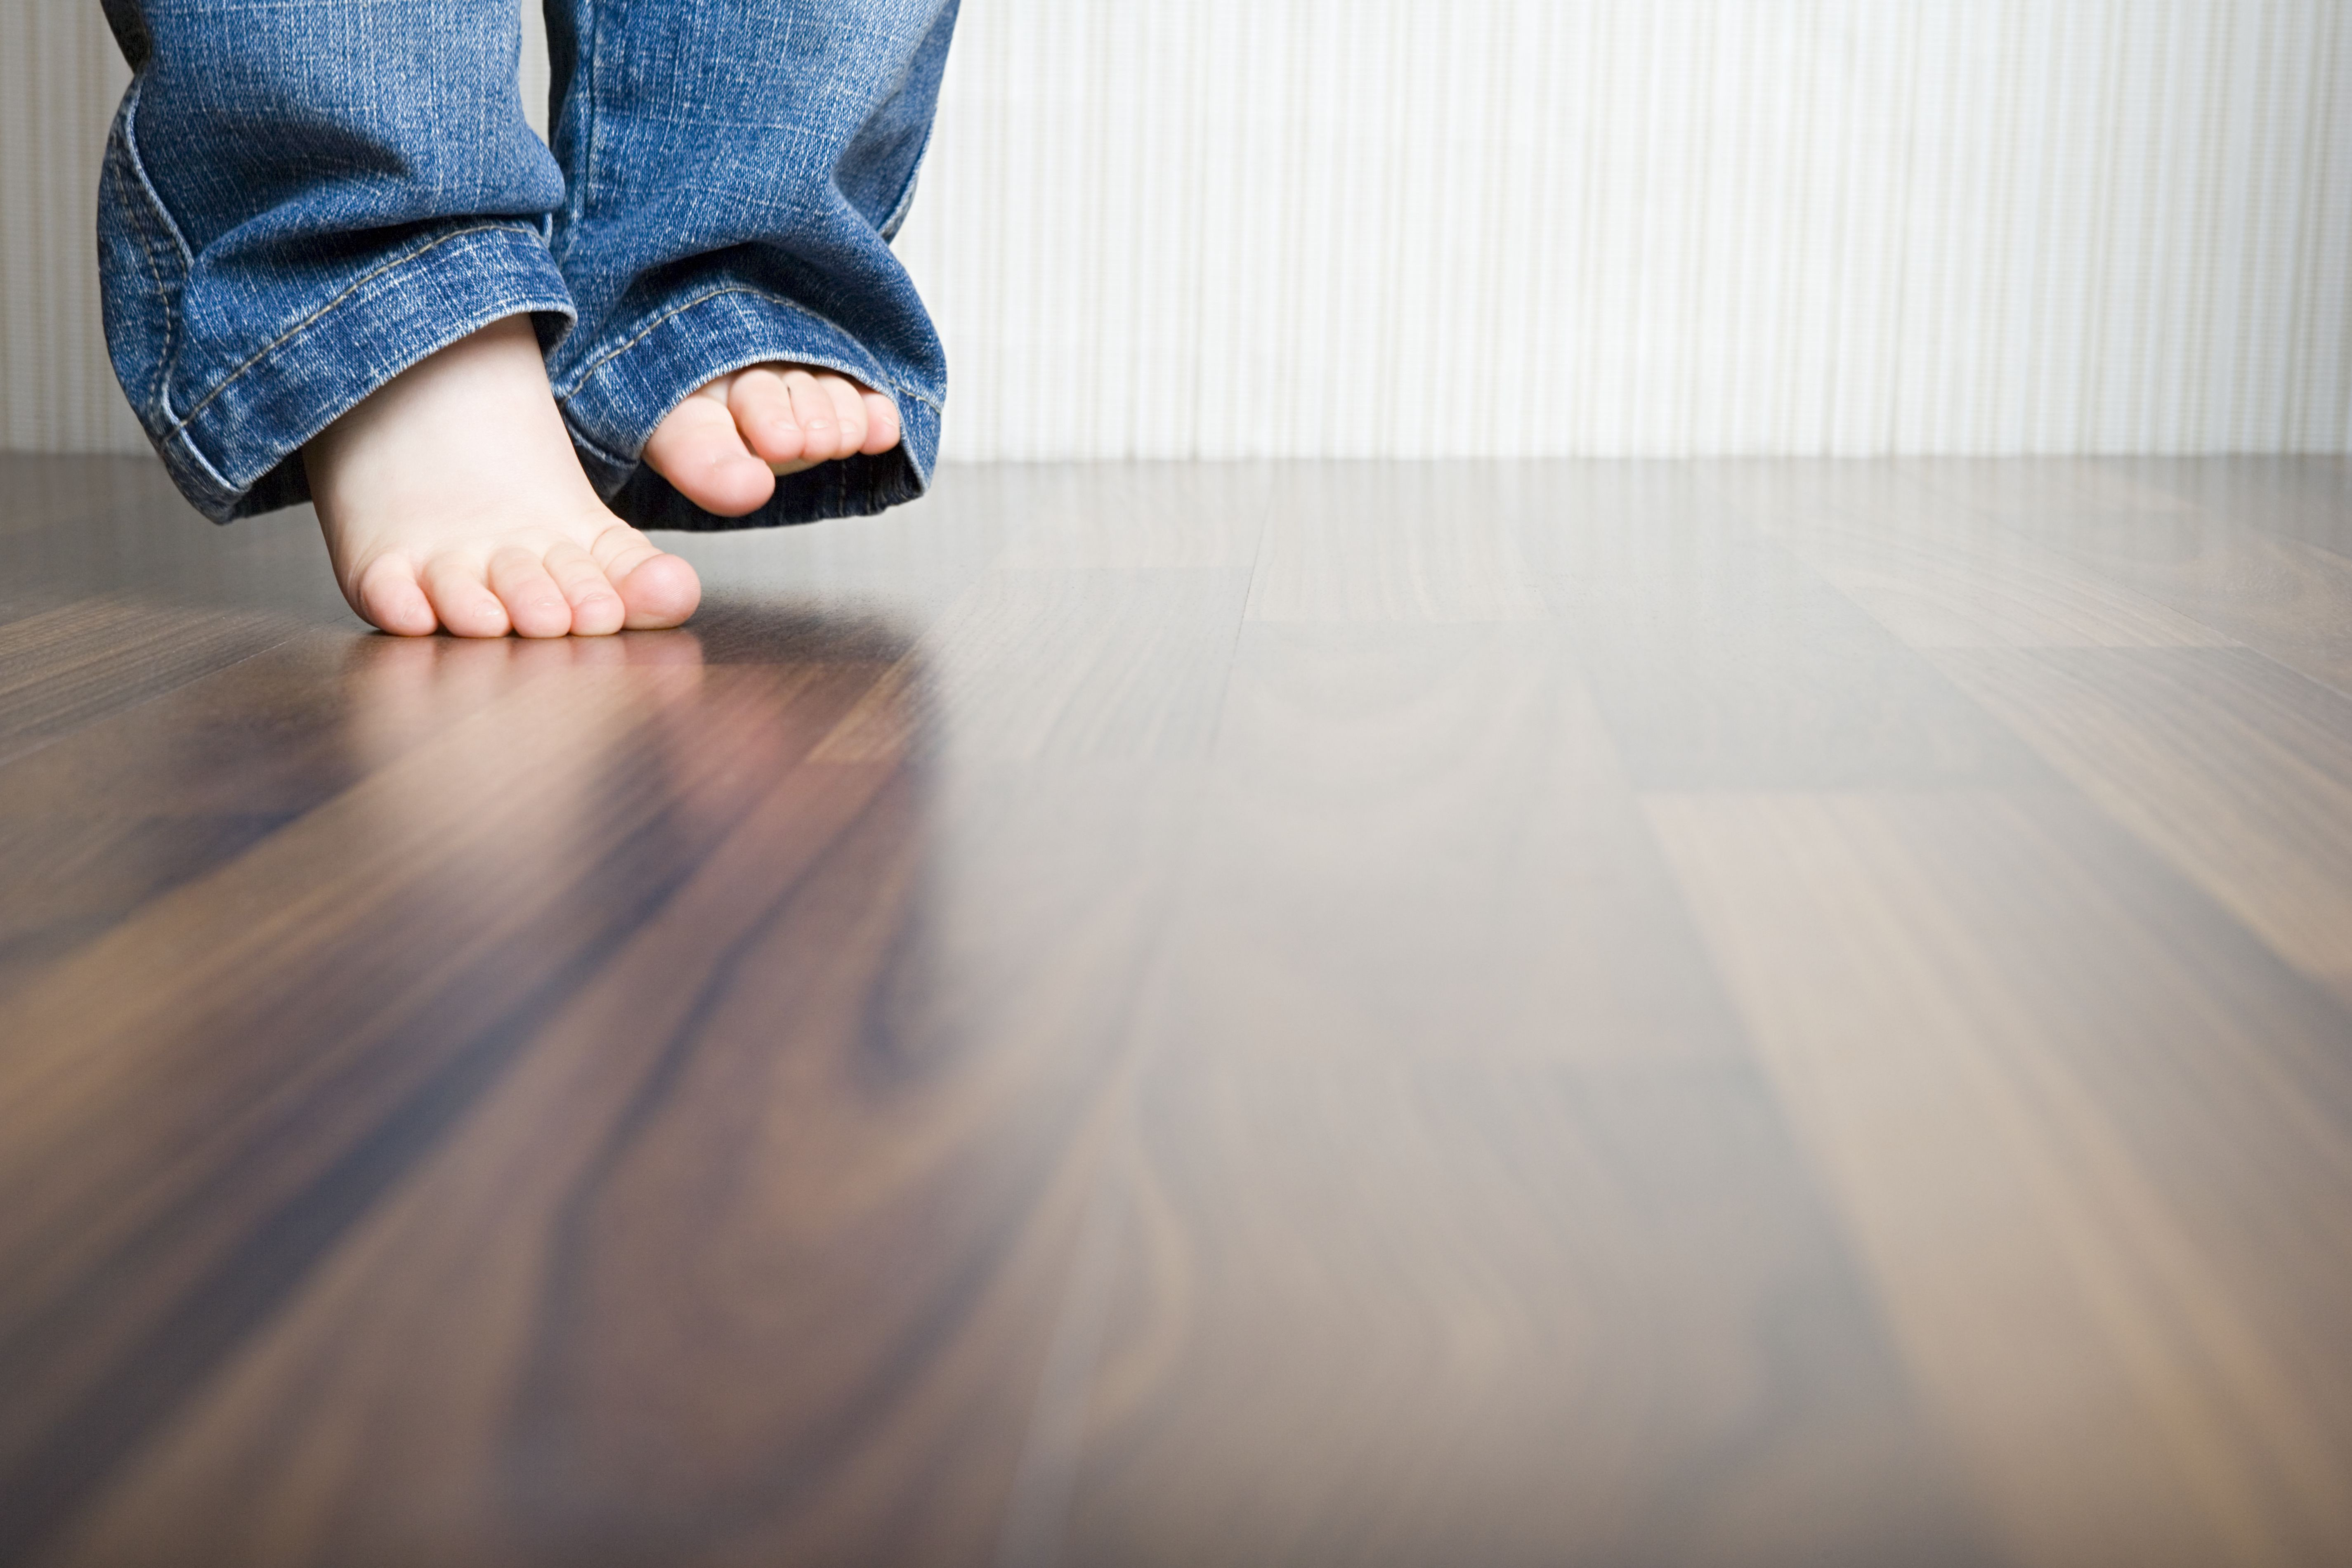 hardwood flooring versus laminate flooring of how to clean hardwood floors best way to clean wood flooring regarding 1512149908 gettyimages 75403973